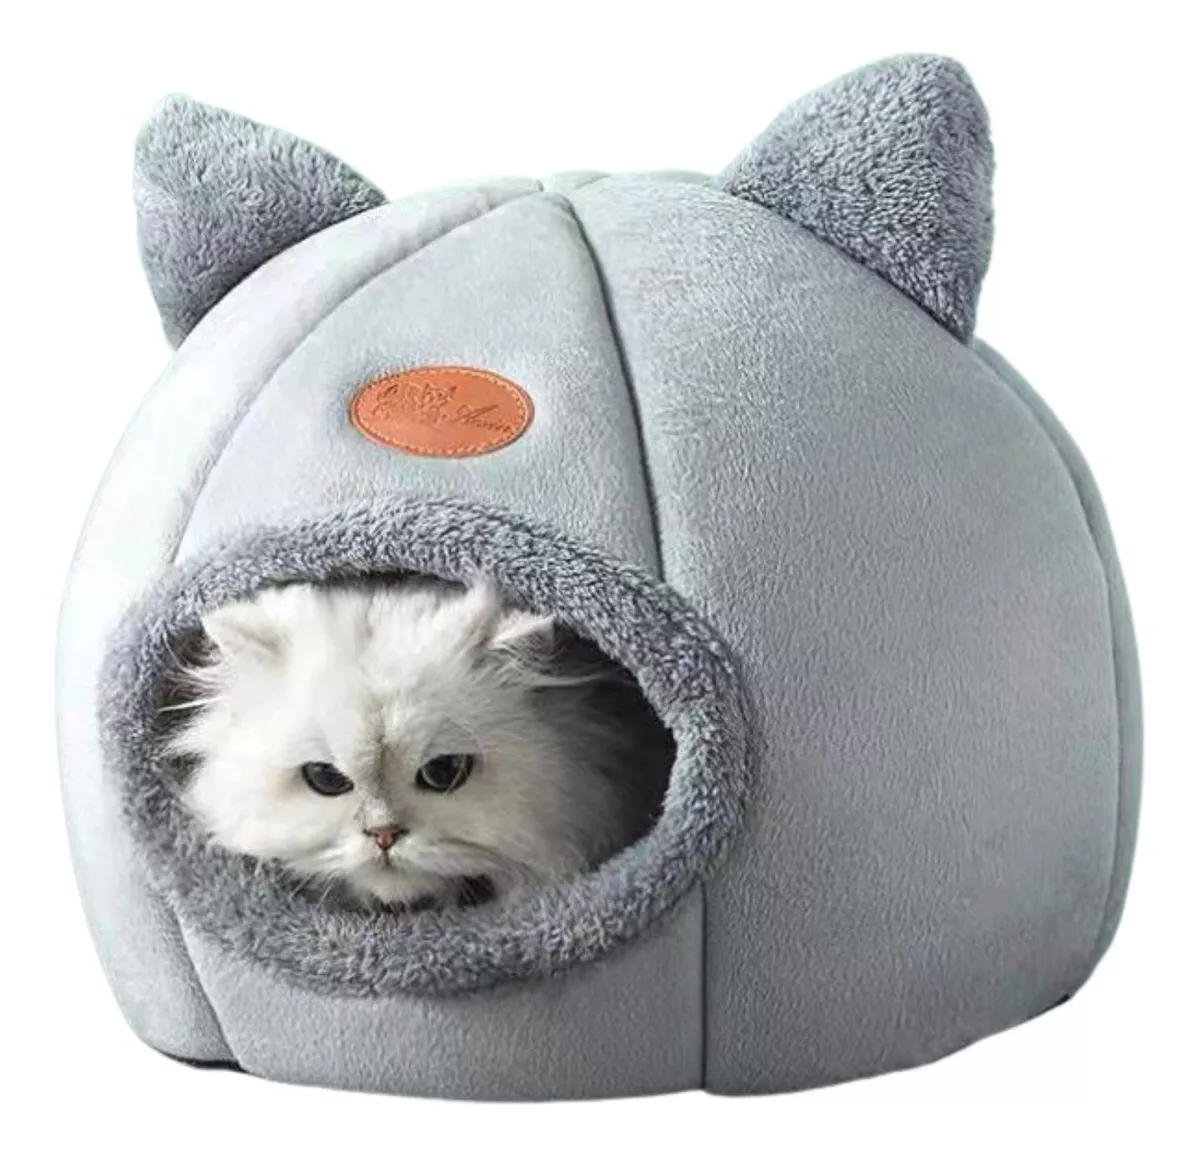 Primera imagen para búsqueda de cama iglu gatos